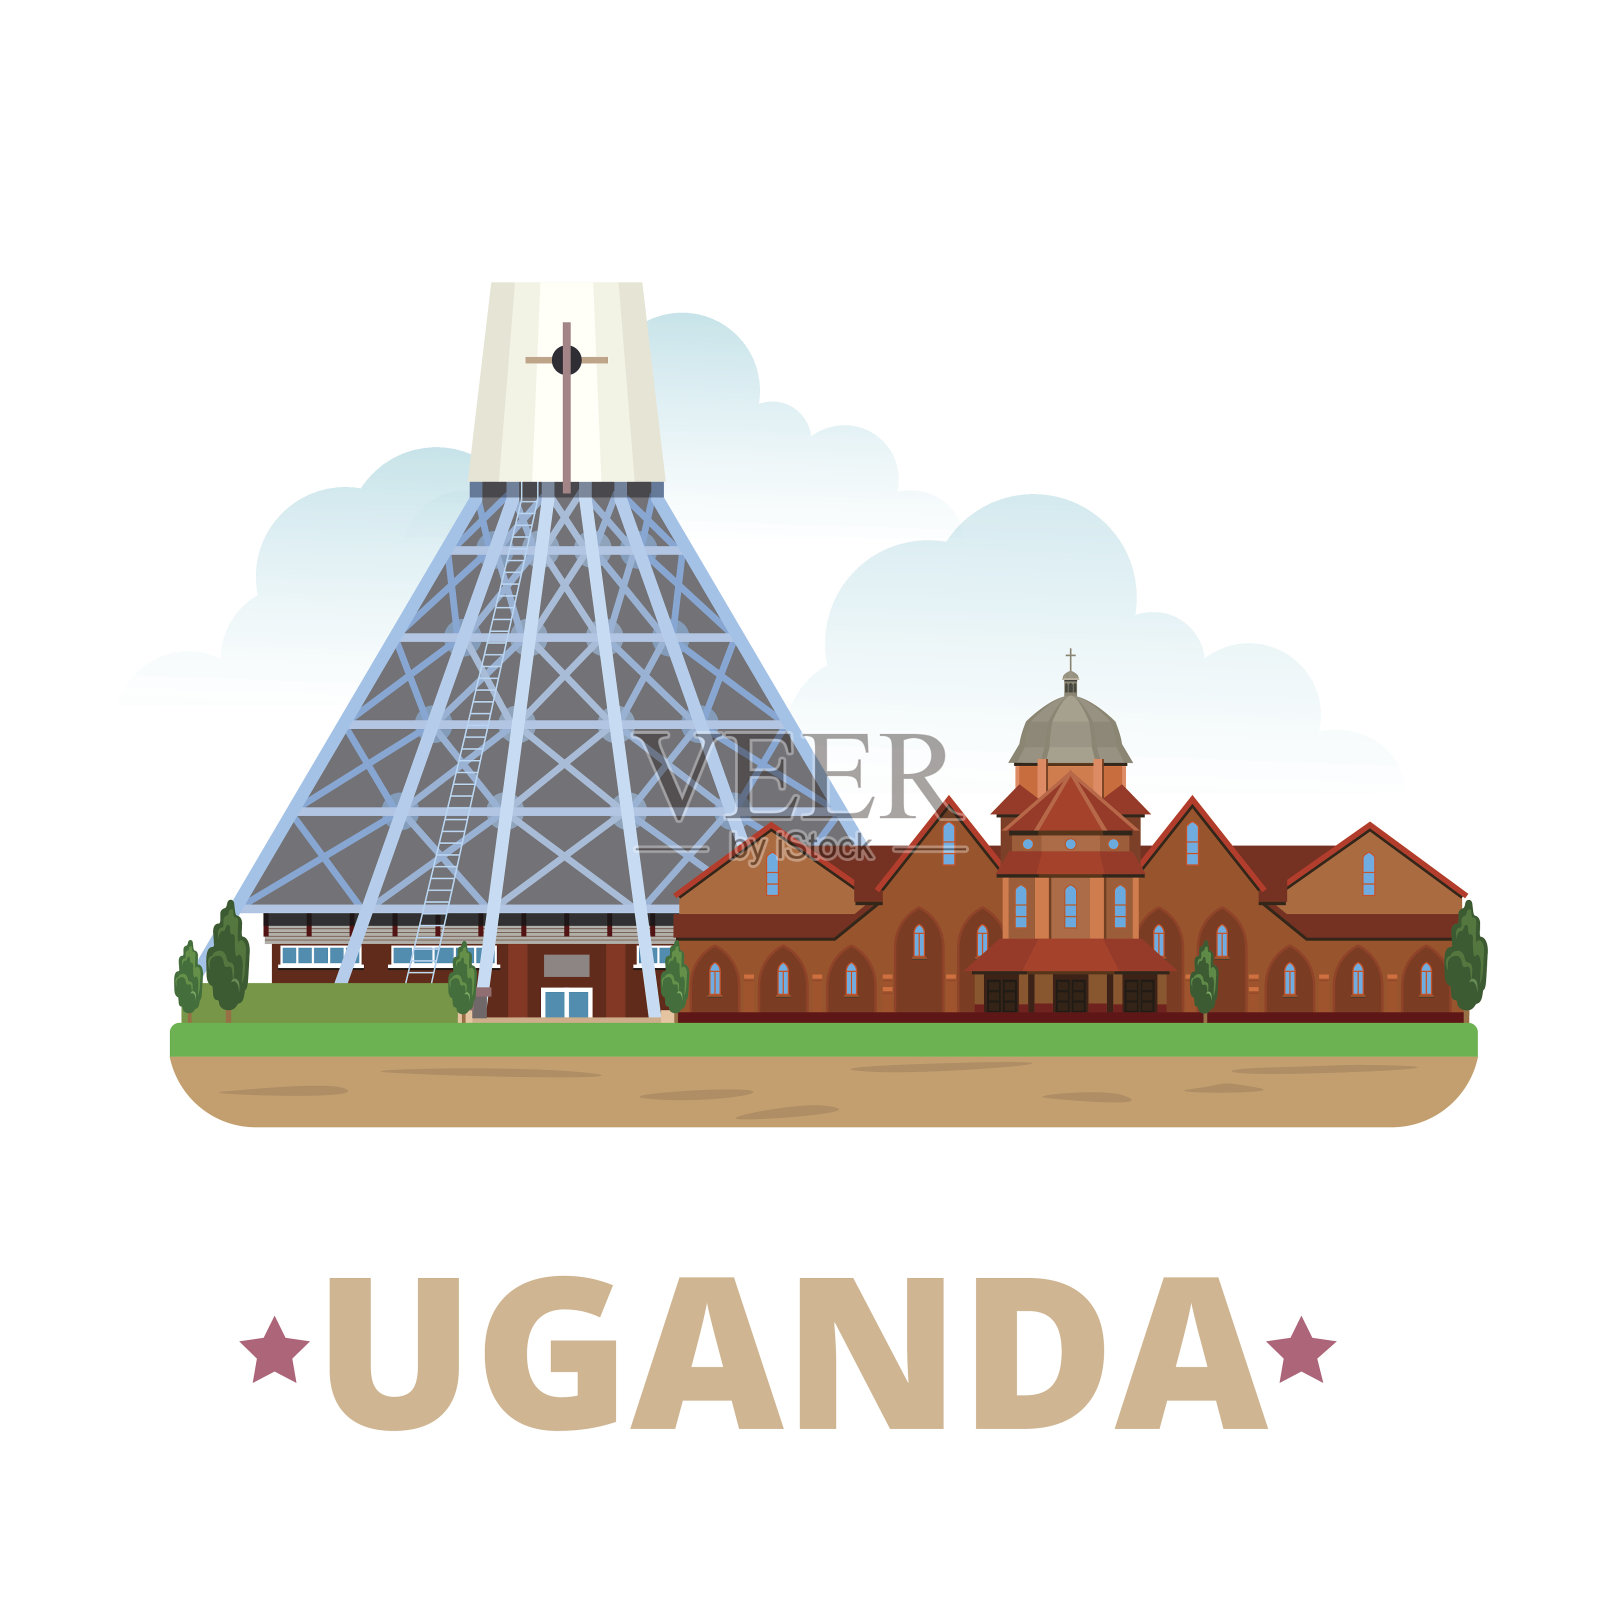 乌干达国家设计模板。平面卡通风格的历史景观展示网站矢量插图。世界旅行非洲非洲收藏。乌干达烈士大教堂纳米伦比大教堂。插画图片素材